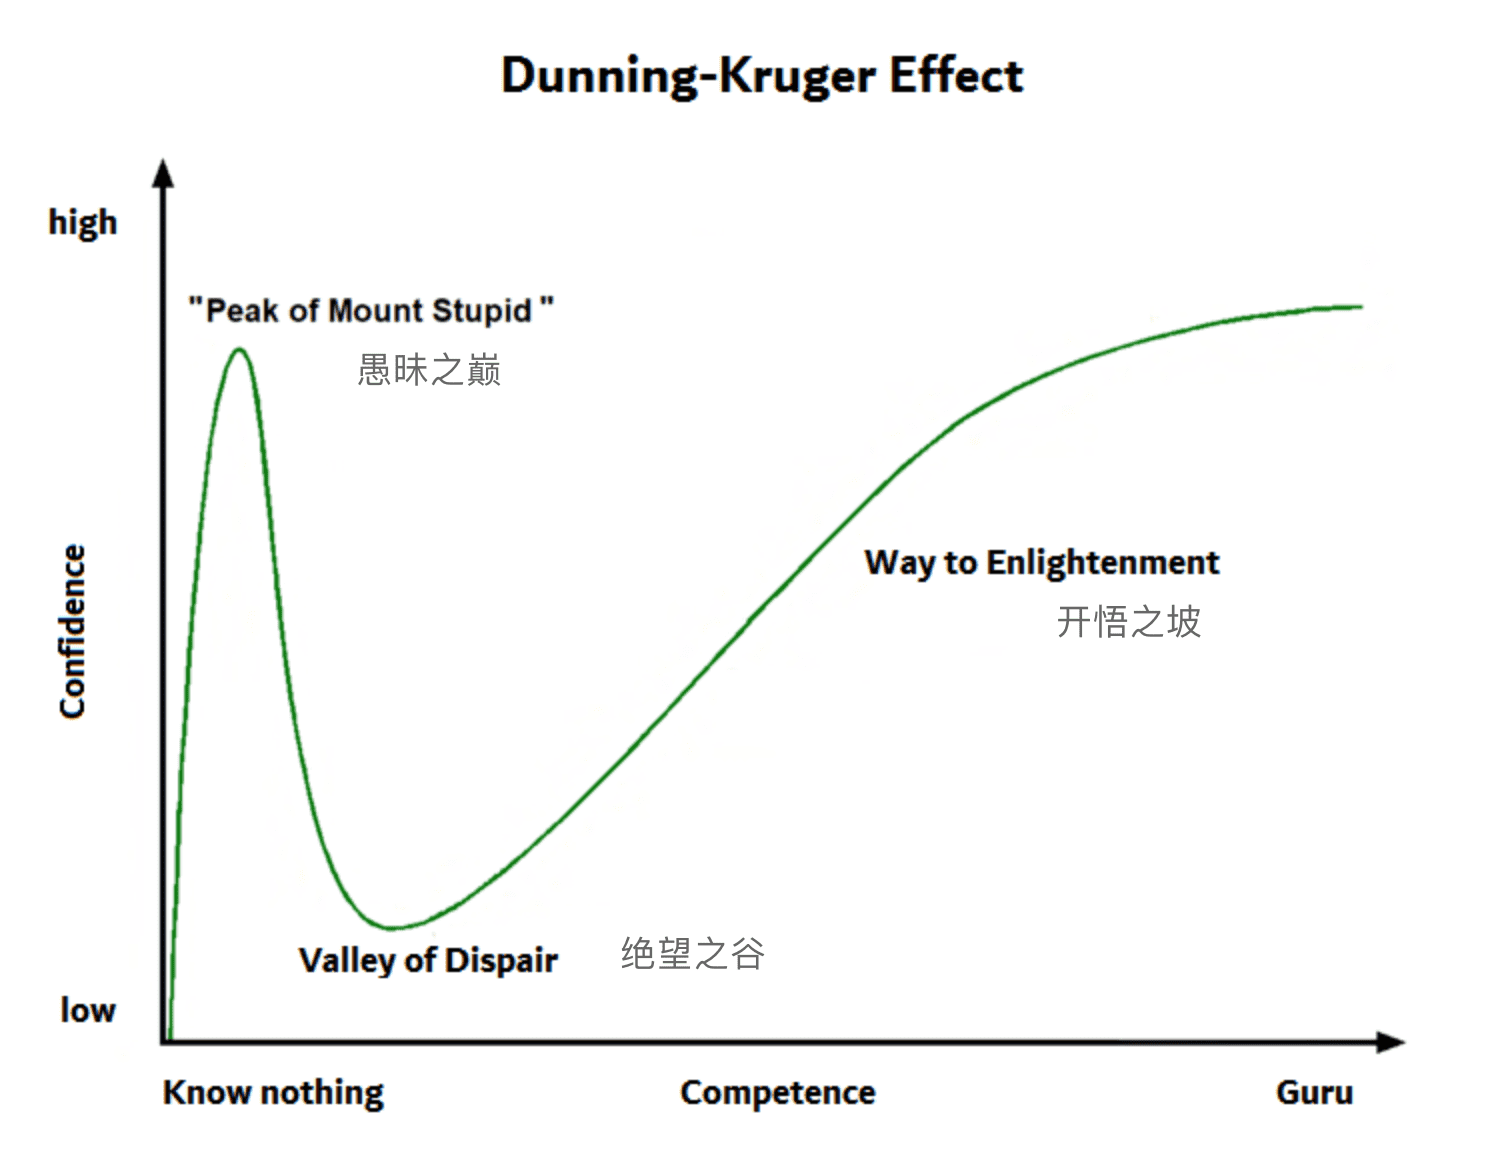 https://zh.wikipedia.org/wiki/File:Dunning-Kruger-Effect-en.png